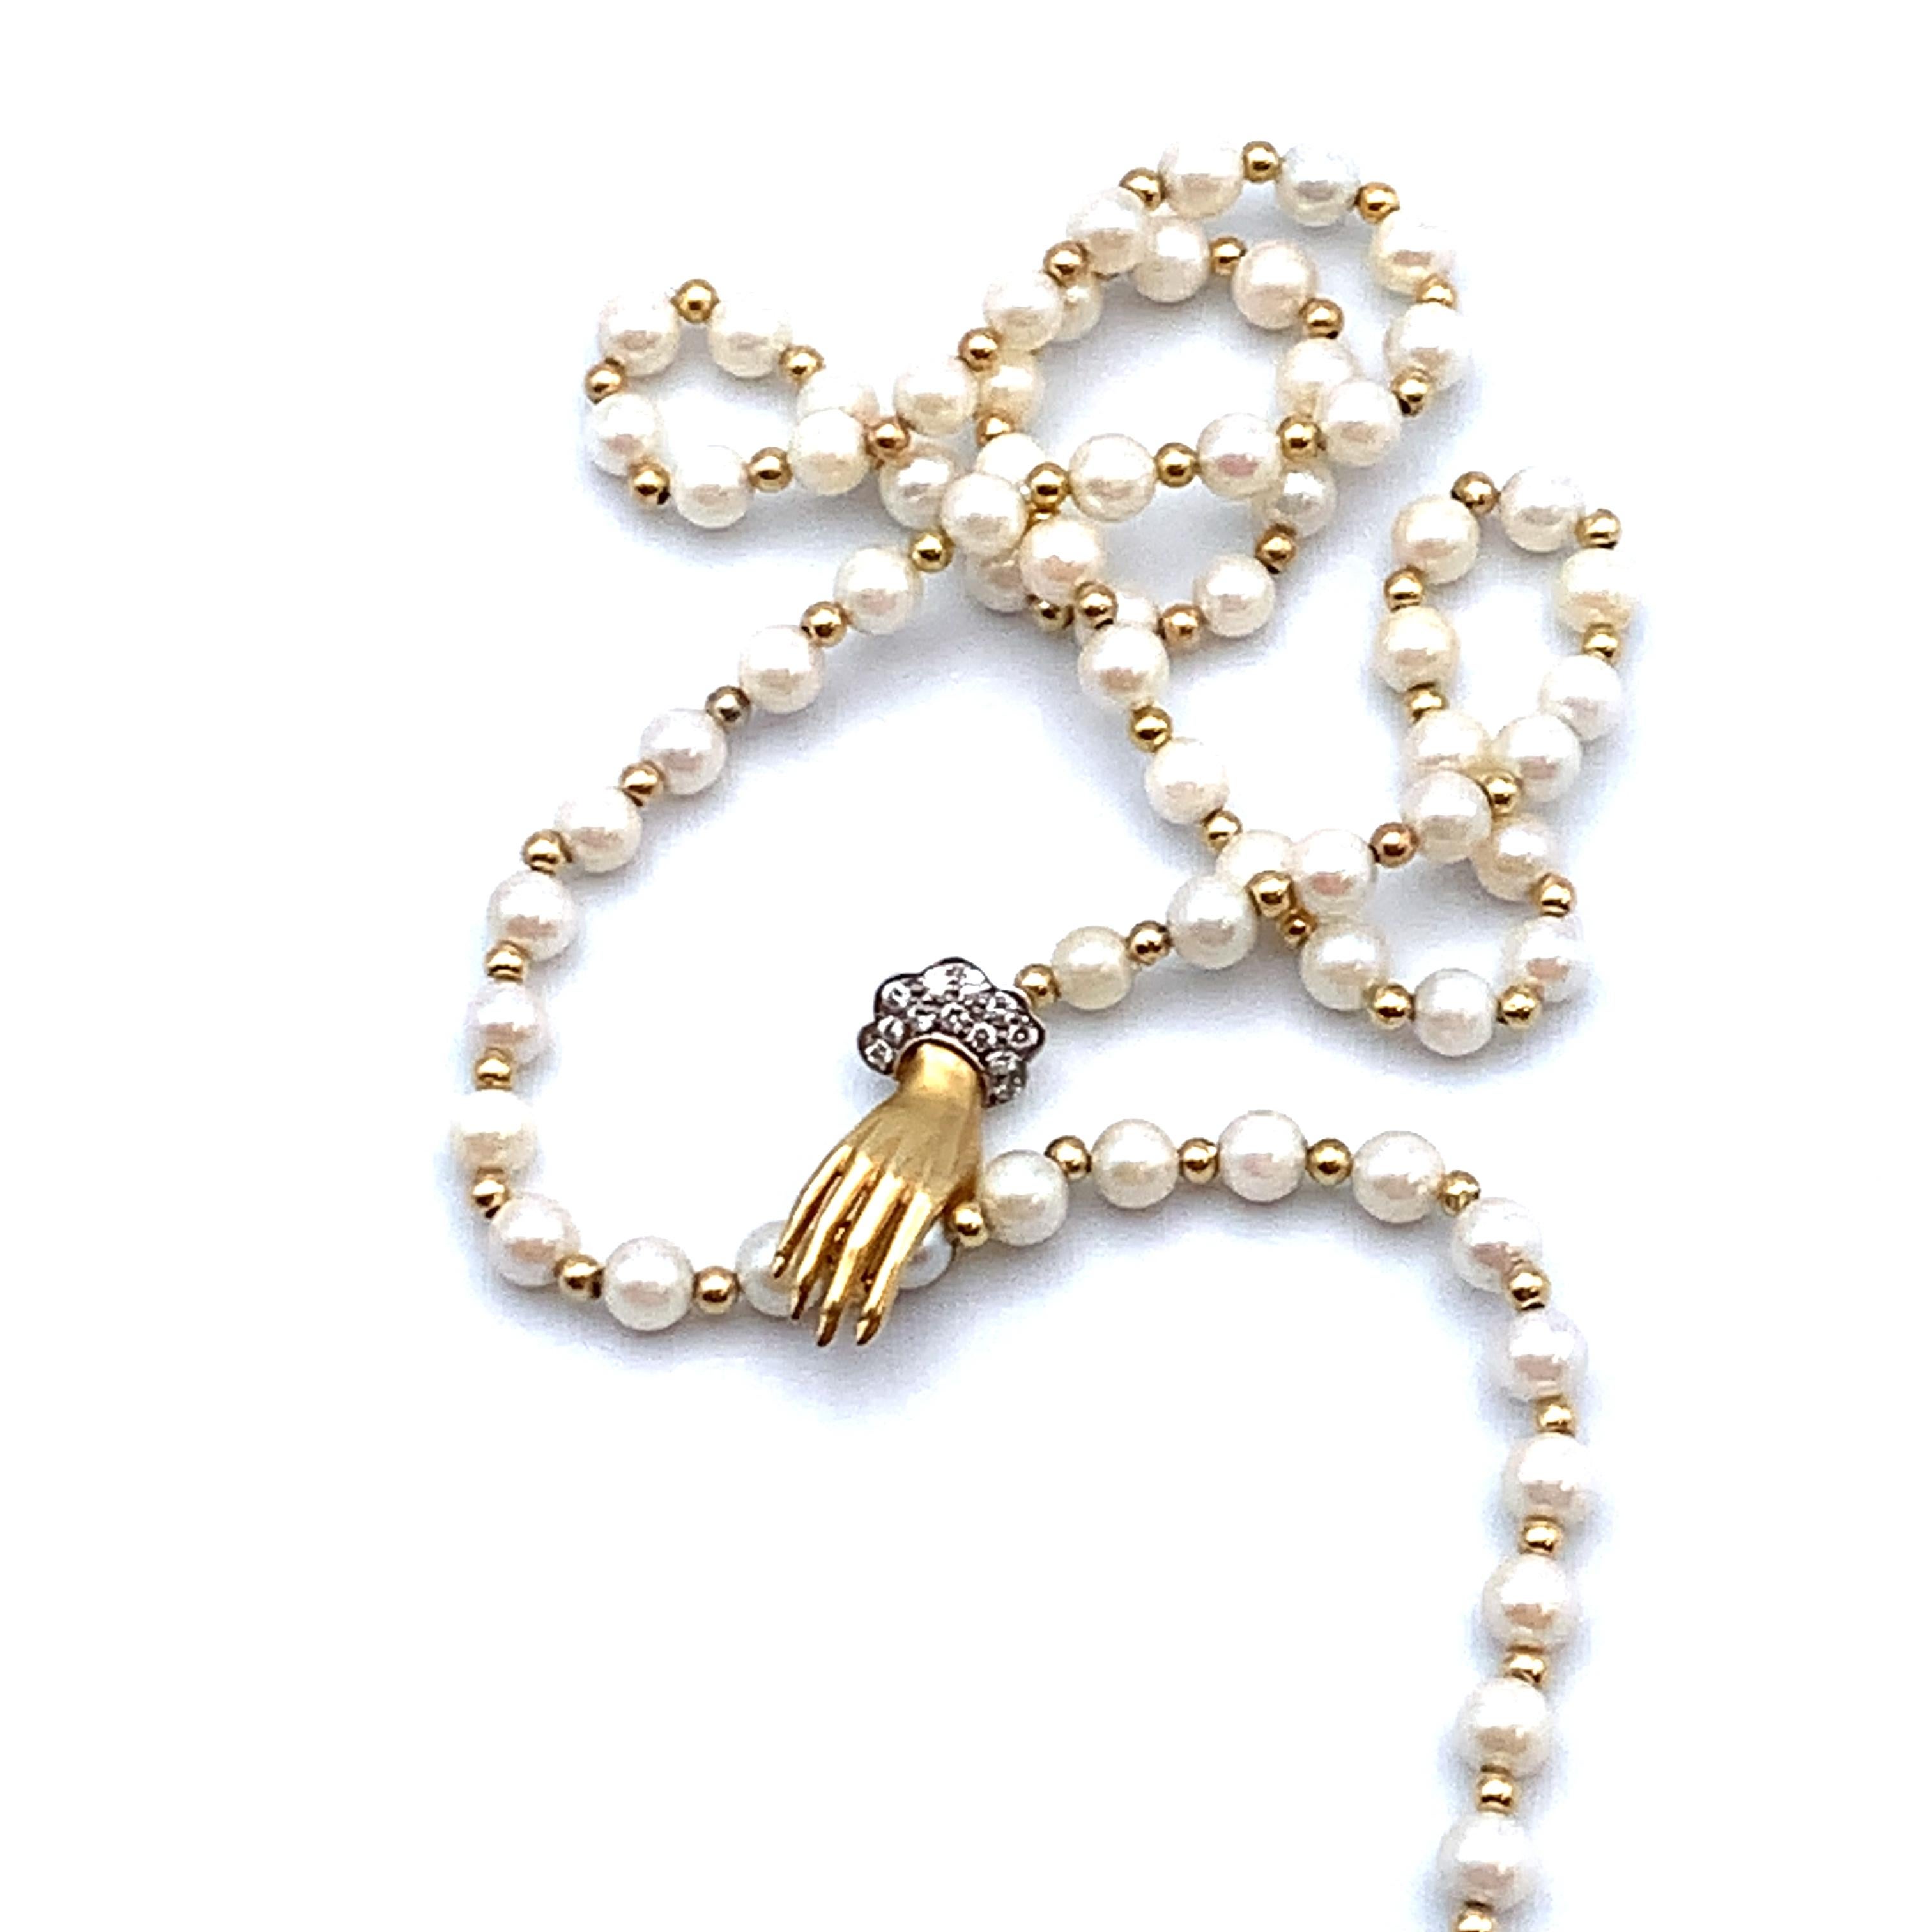 Collier lariat avec perles et perles dorées alternées.  Il s'attache avec une 